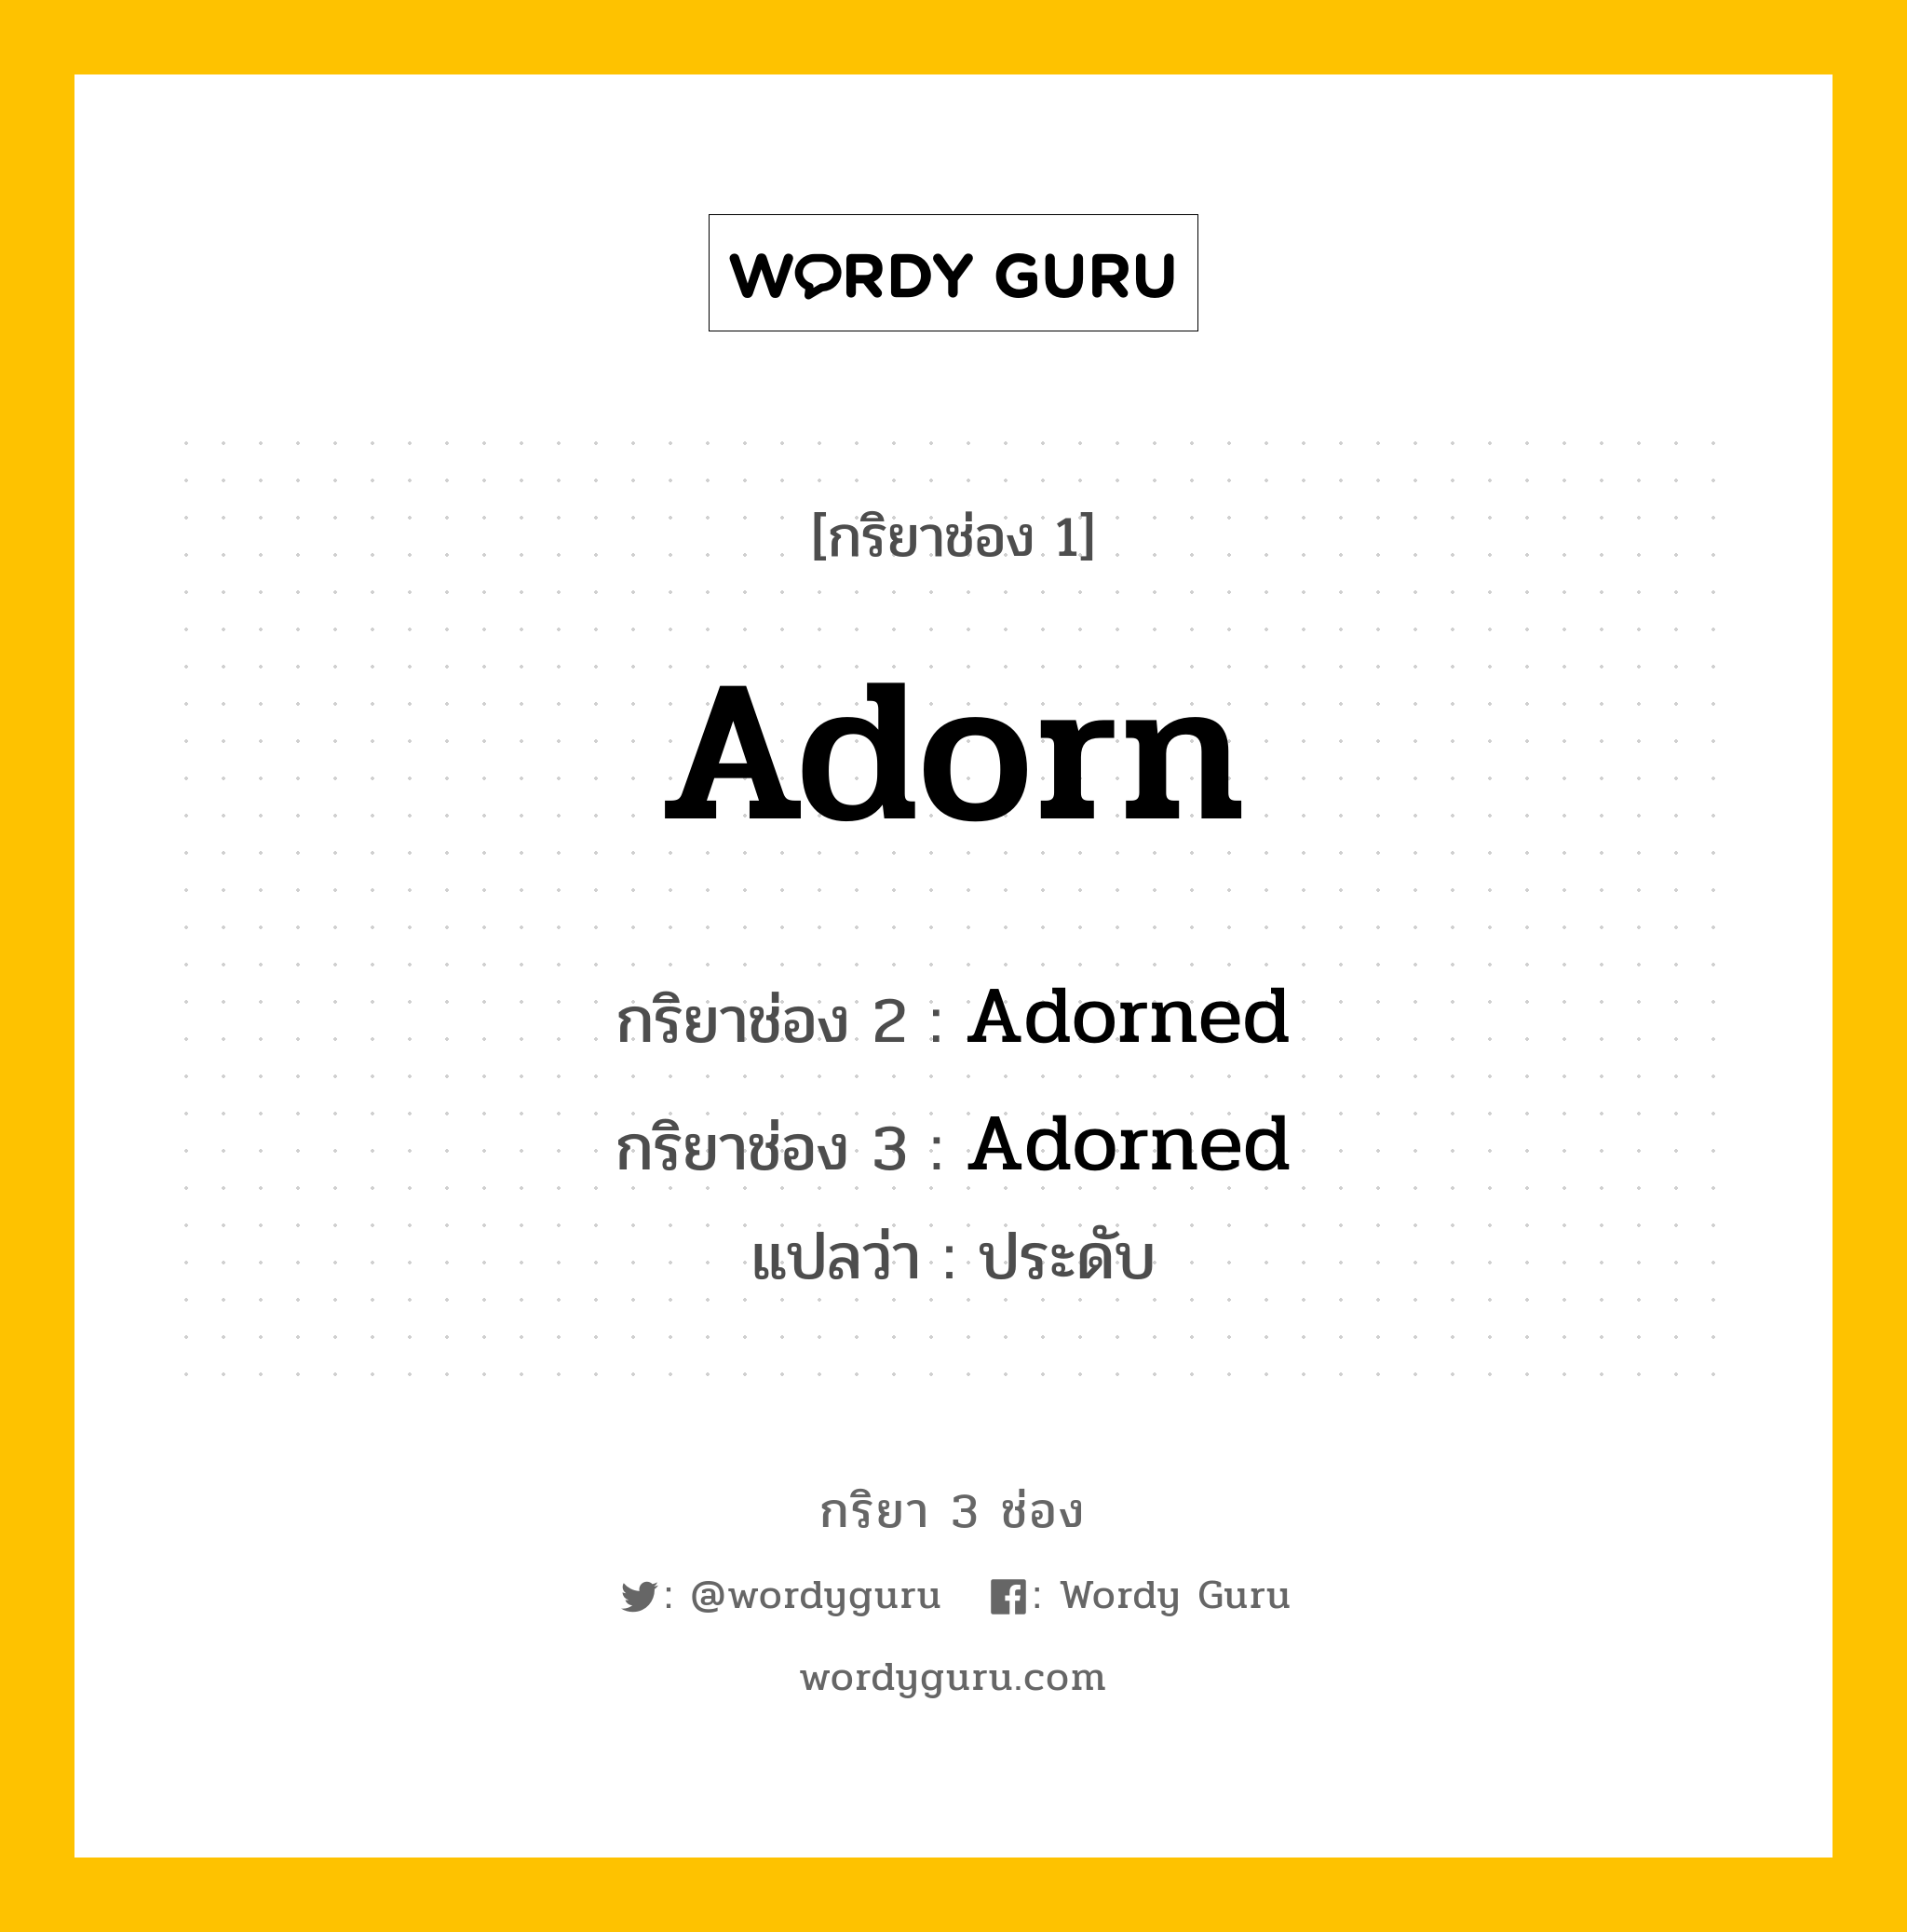 Adorn มีกริยา 3 ช่องอะไรบ้าง? คำศัพท์ในกลุ่มประเภท Regular Verb, กริยาช่อง 1 Adorn กริยาช่อง 2 Adorned กริยาช่อง 3 Adorned แปลว่า ประดับ หมวด Regular Verb หมวด Regular Verb